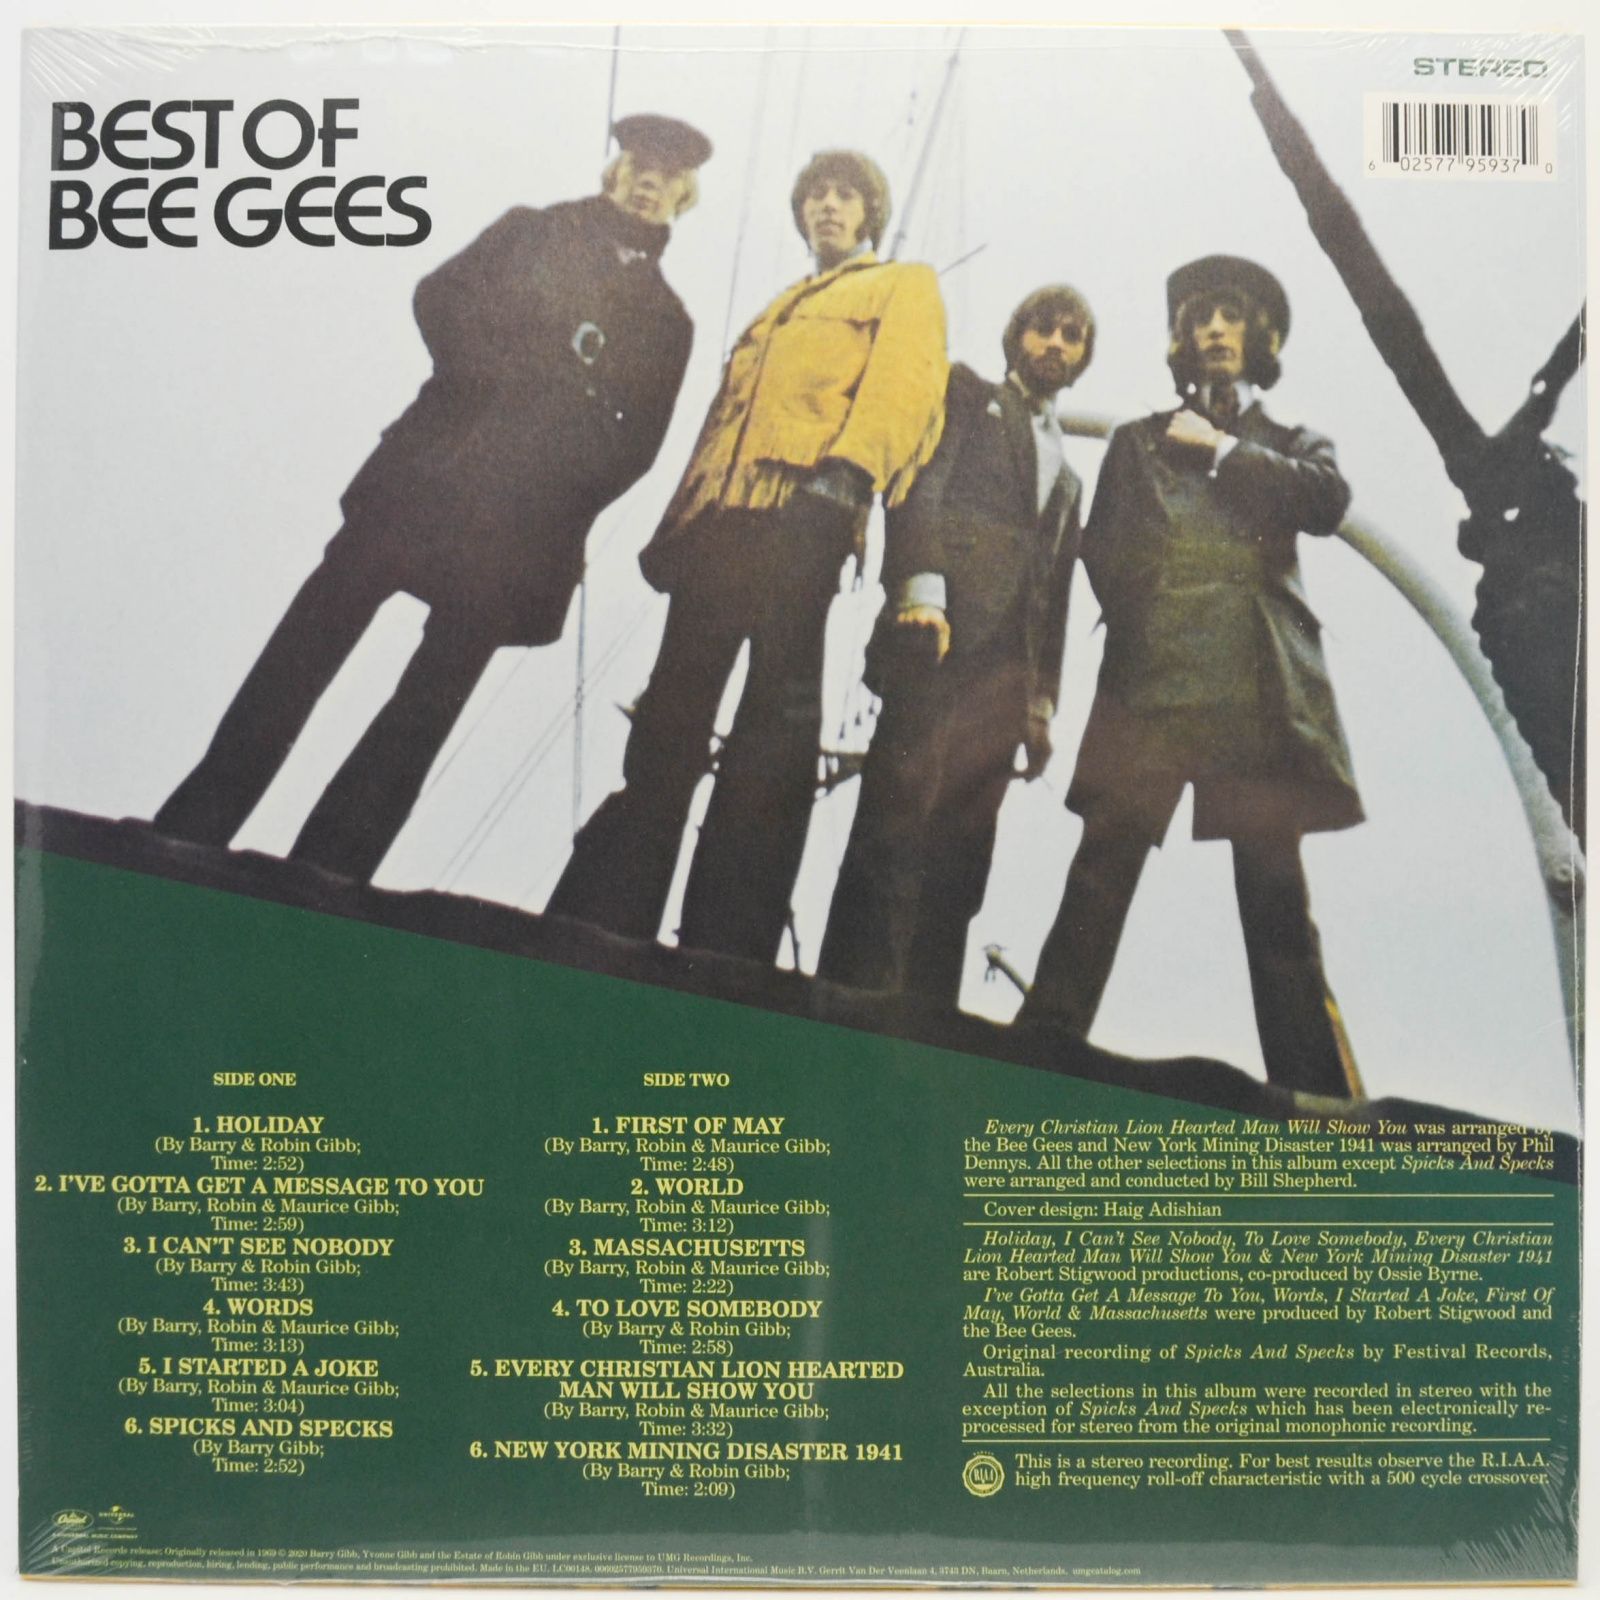 Bee Gees — Best Of Bee Gees, 1969